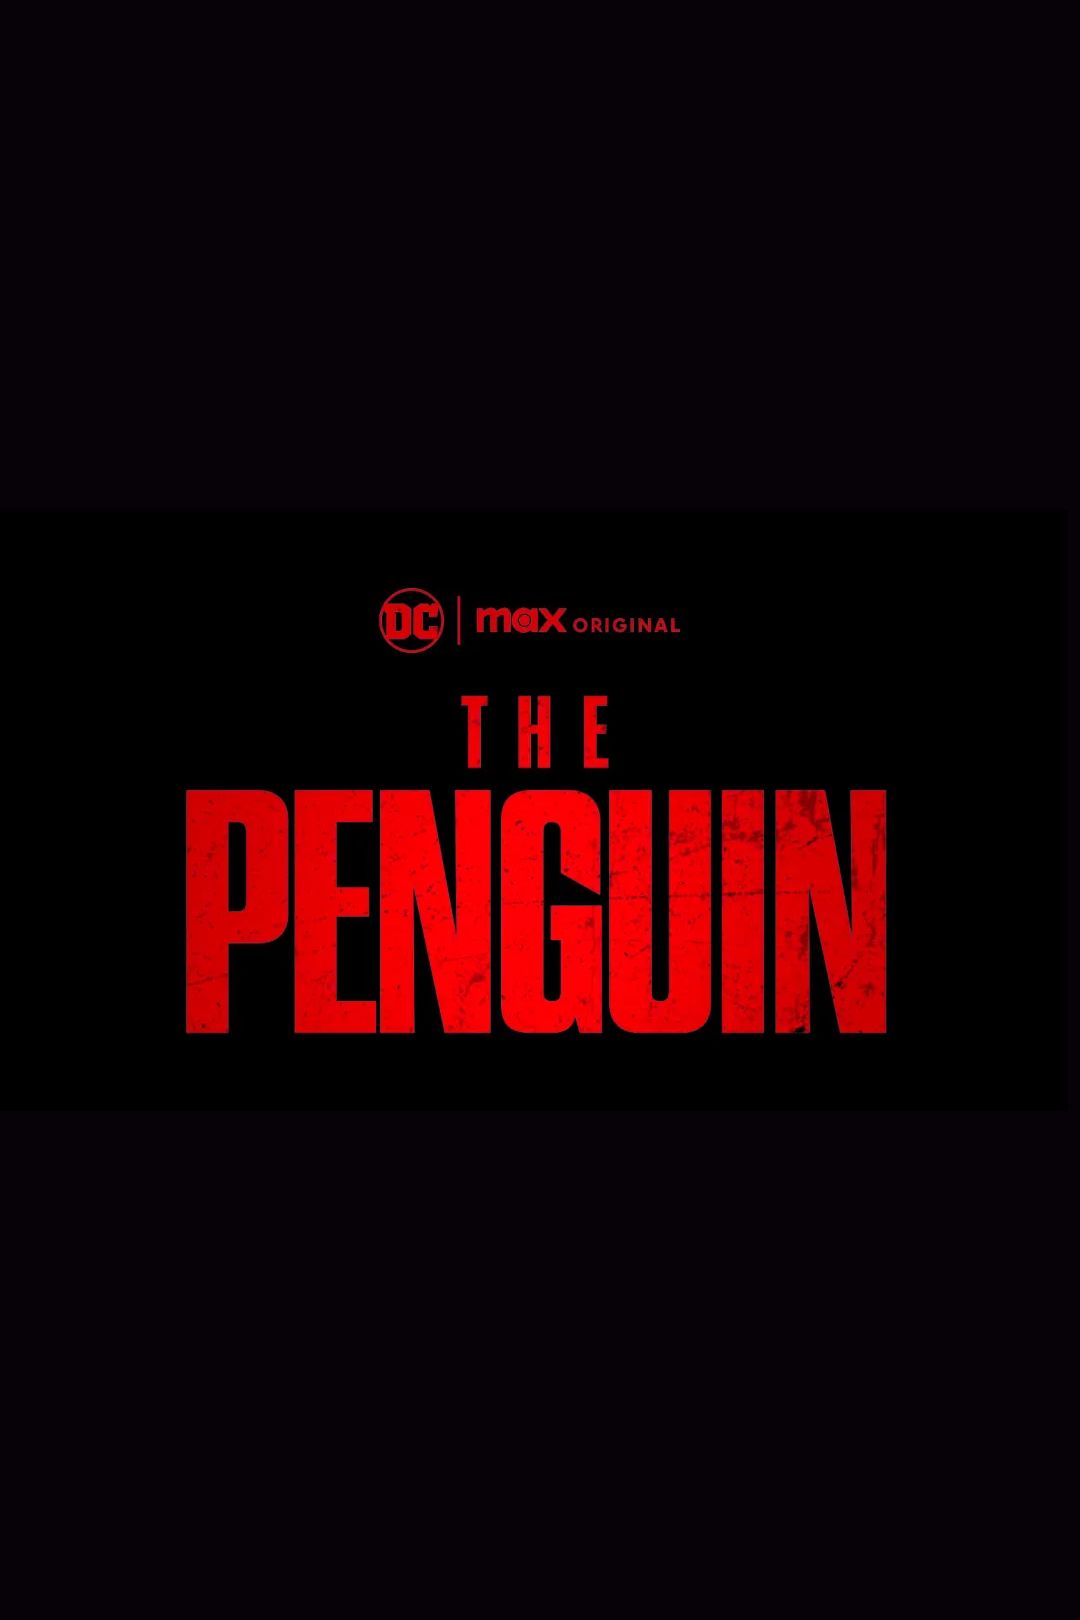 Logotipo da série de TV Penguin Max